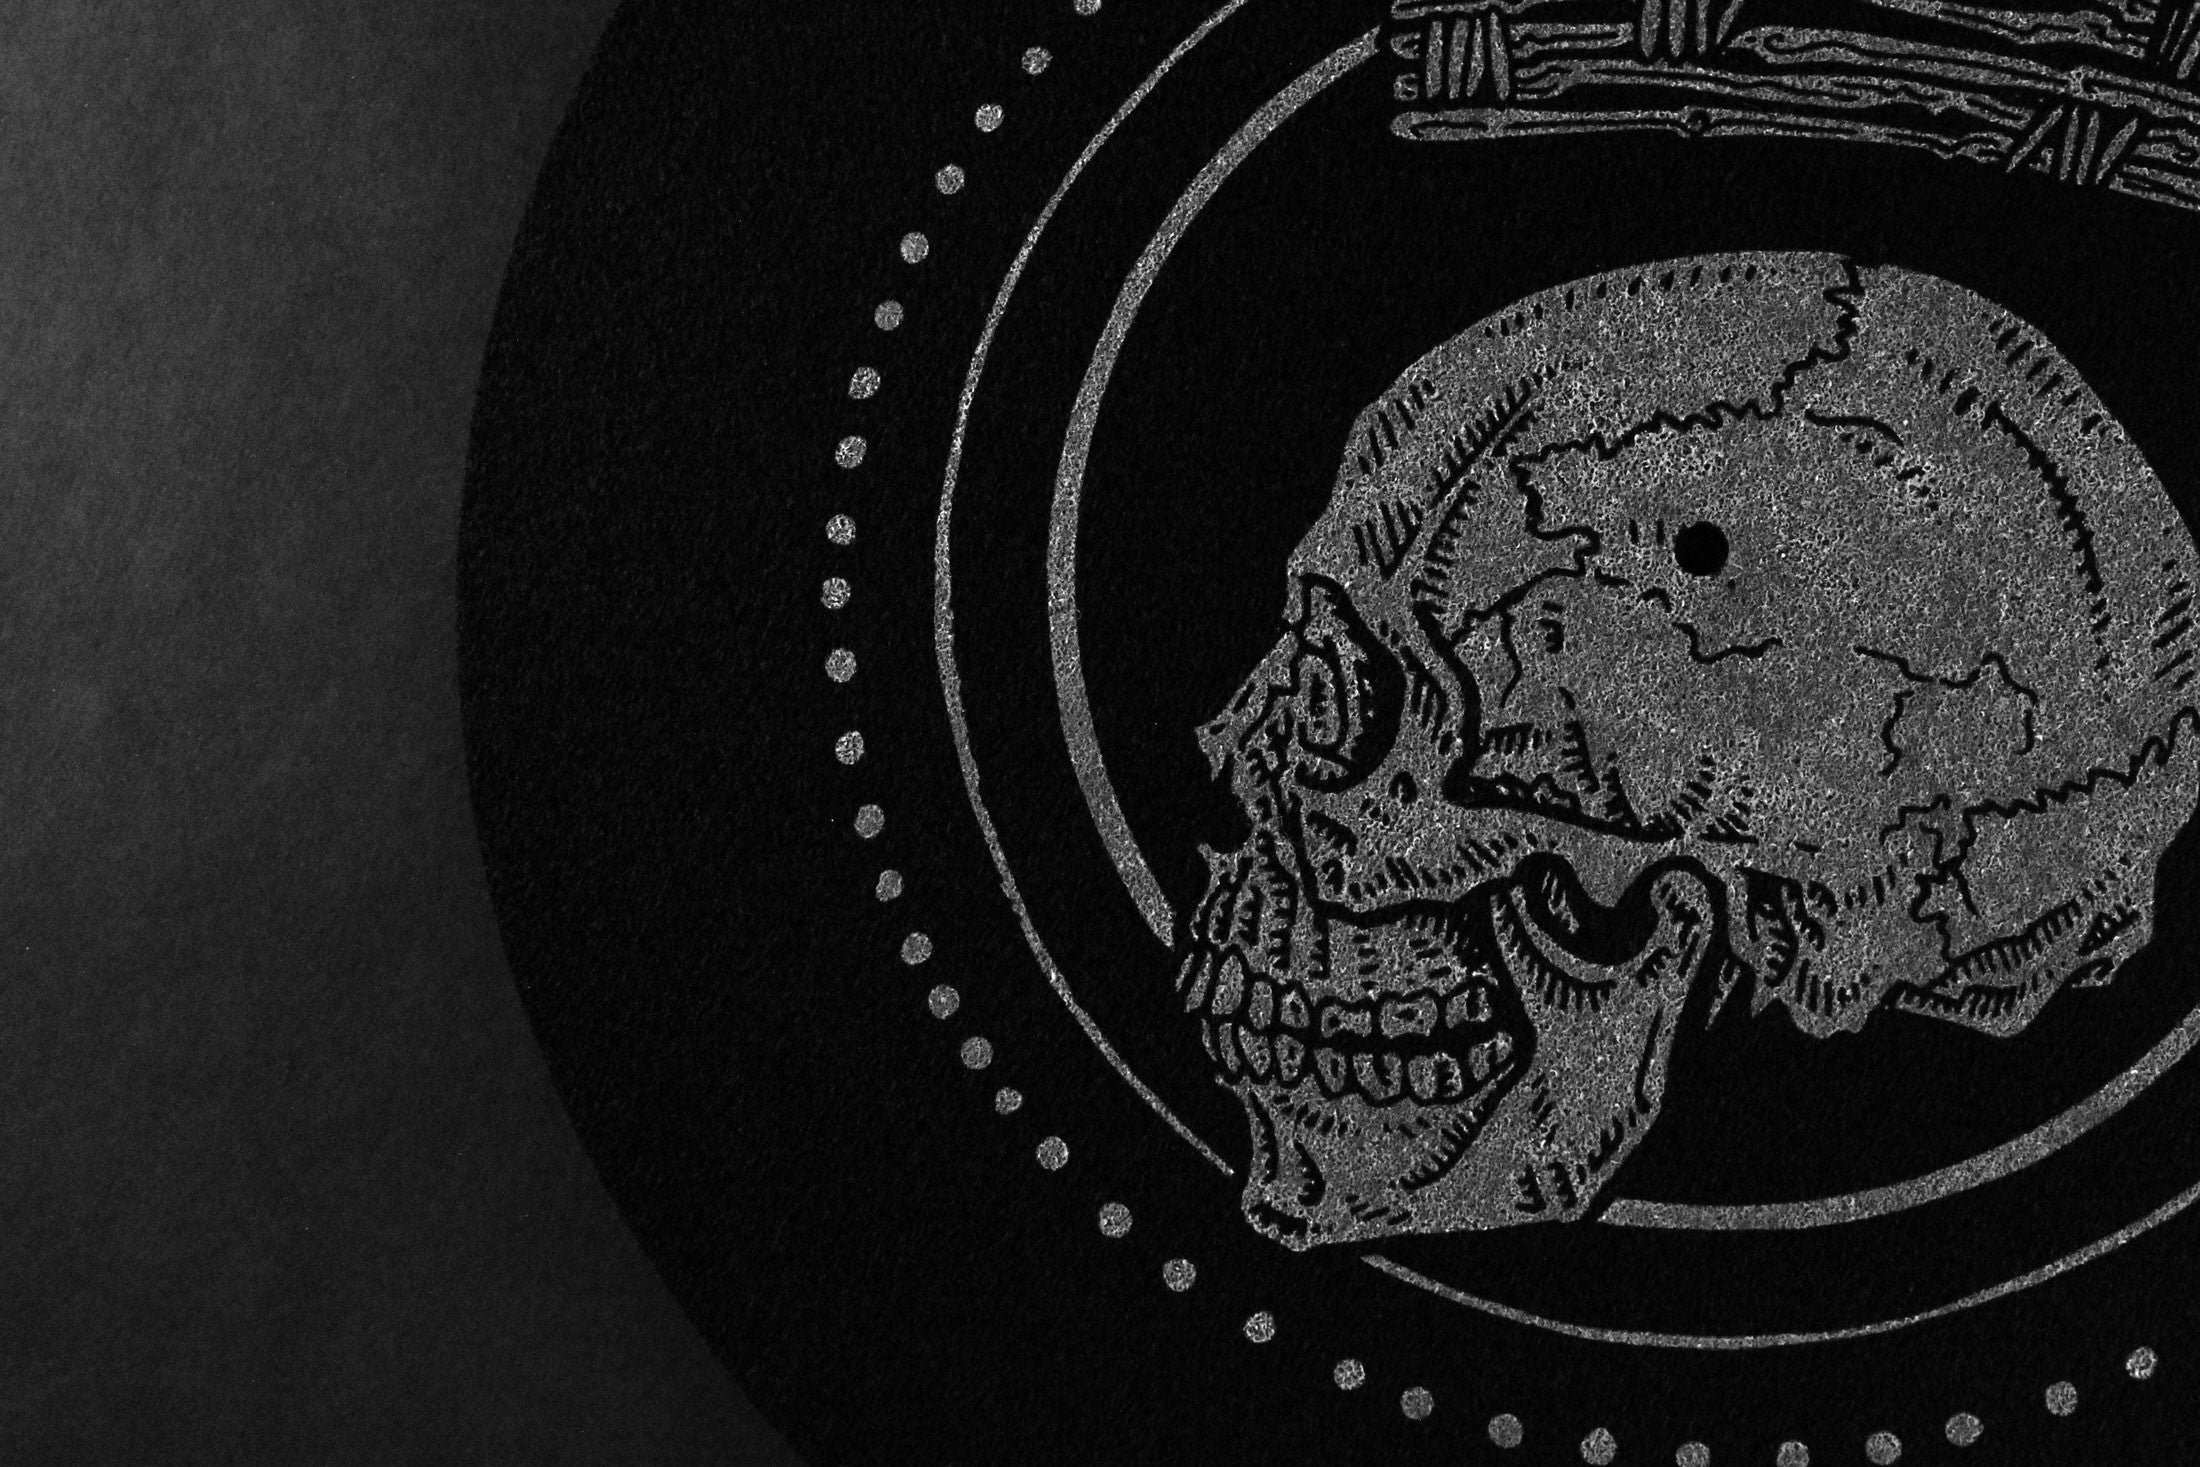 skull crown goth metal vinyl turntable slipmat black